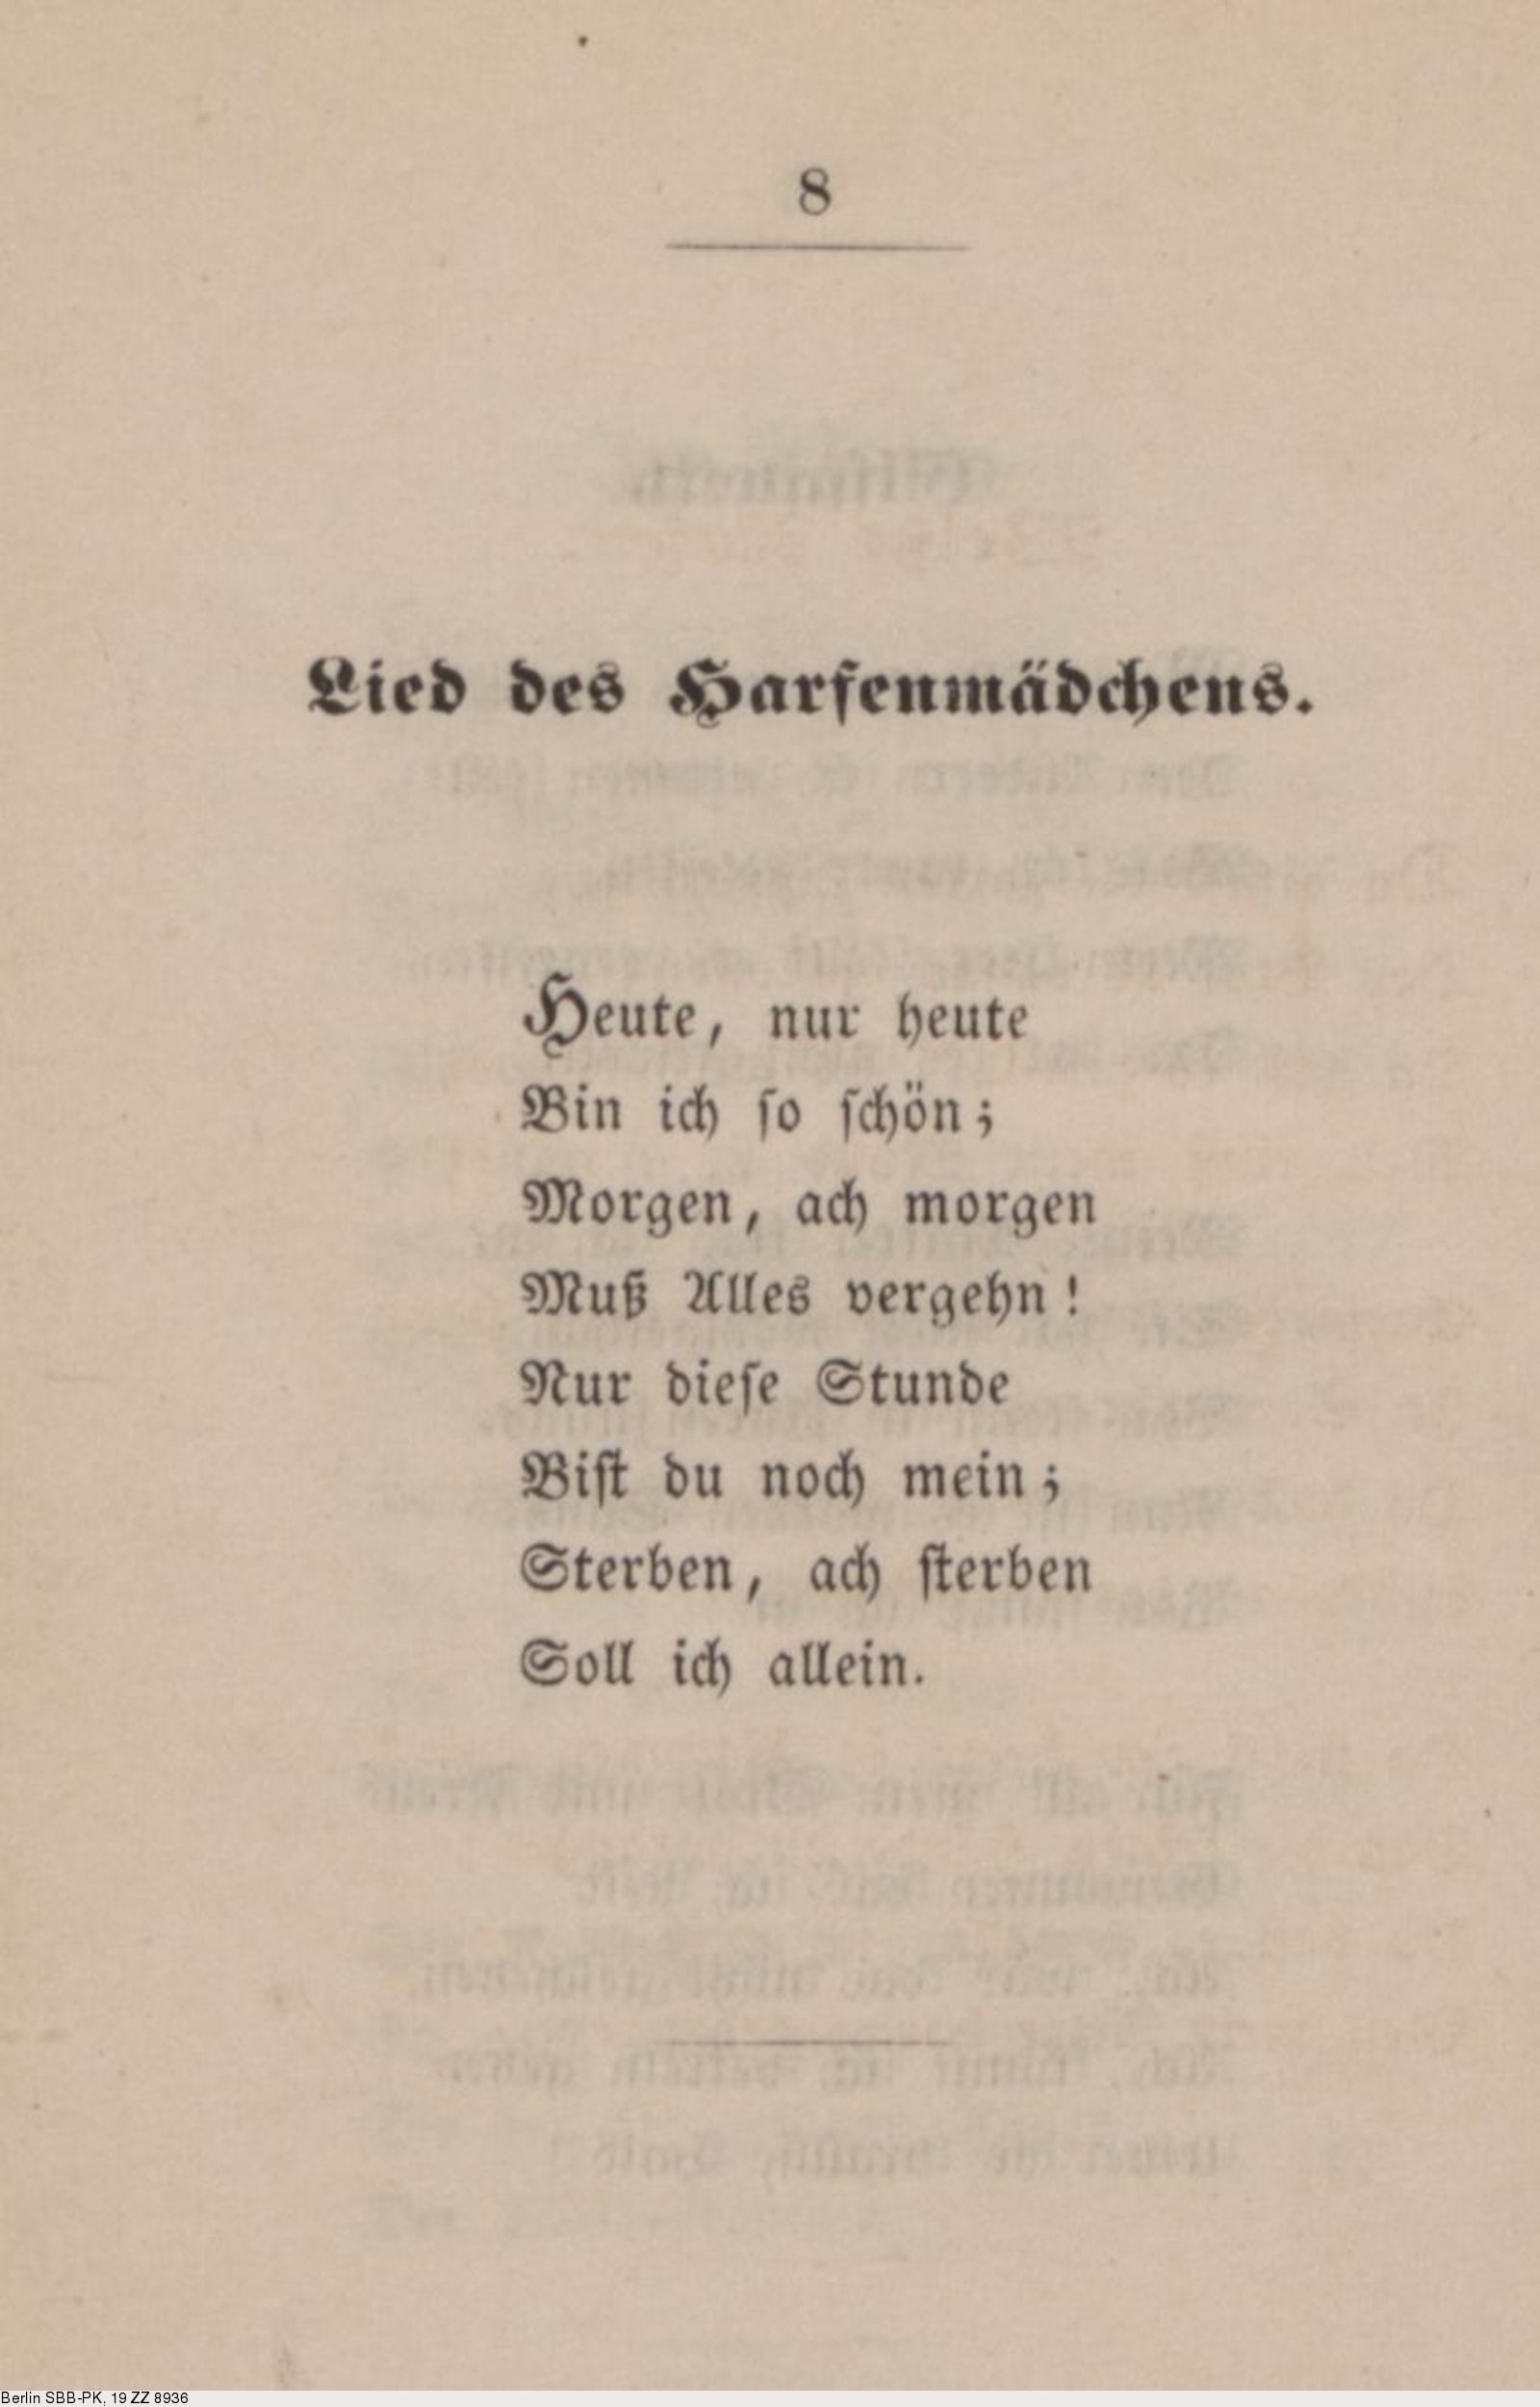 Deutsches Textarchiv – Storm, Theodor: Gedichte. Kiel, 1852.